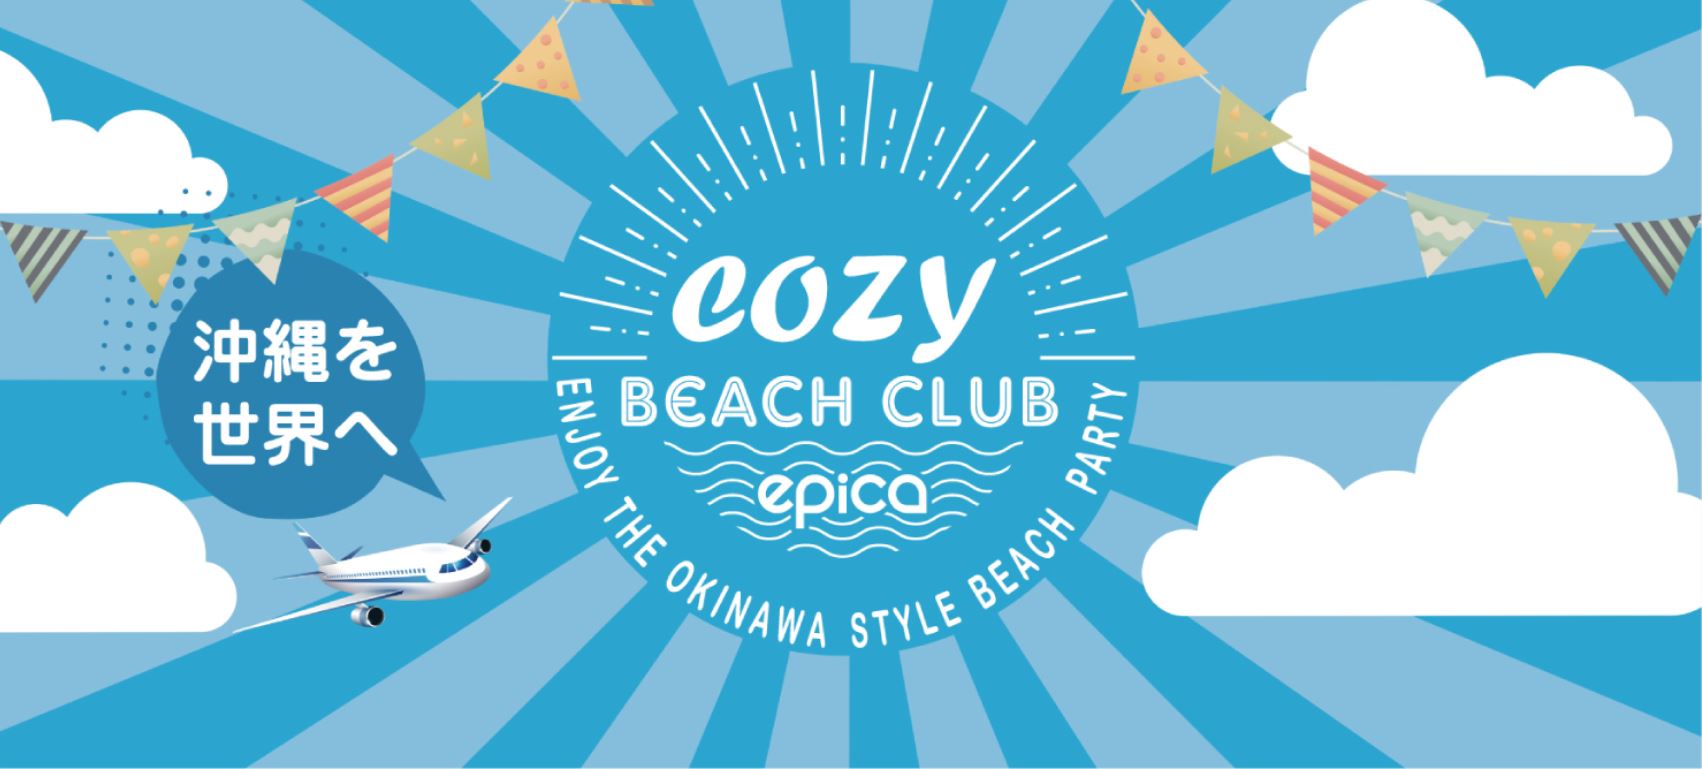 Cozy Beach Club | コージービーチクラブ沖縄